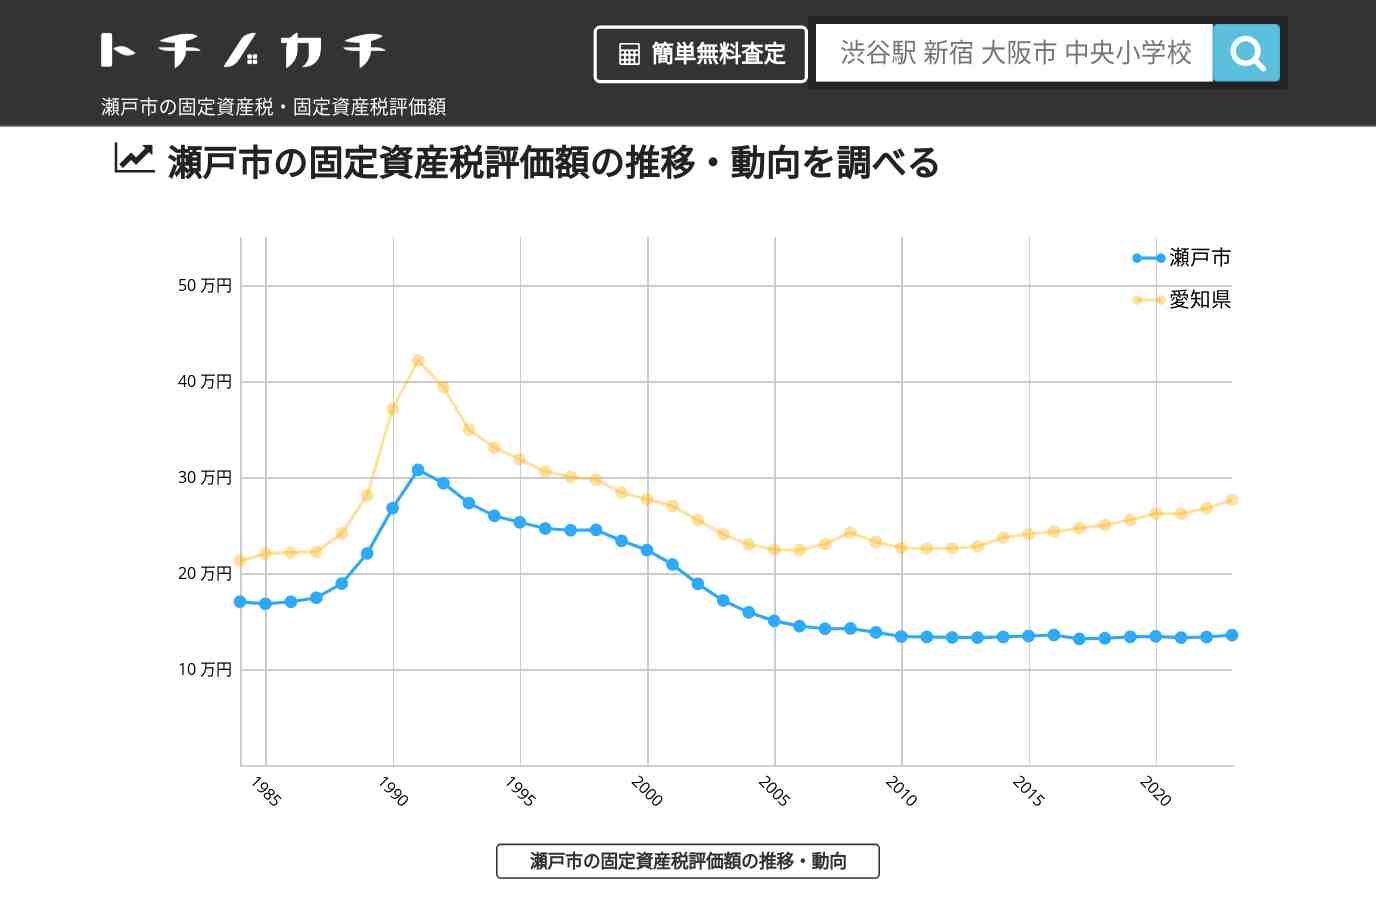 西陵小学校(愛知県 瀬戸市)周辺の固定資産税・固定資産税評価額 | トチノカチ